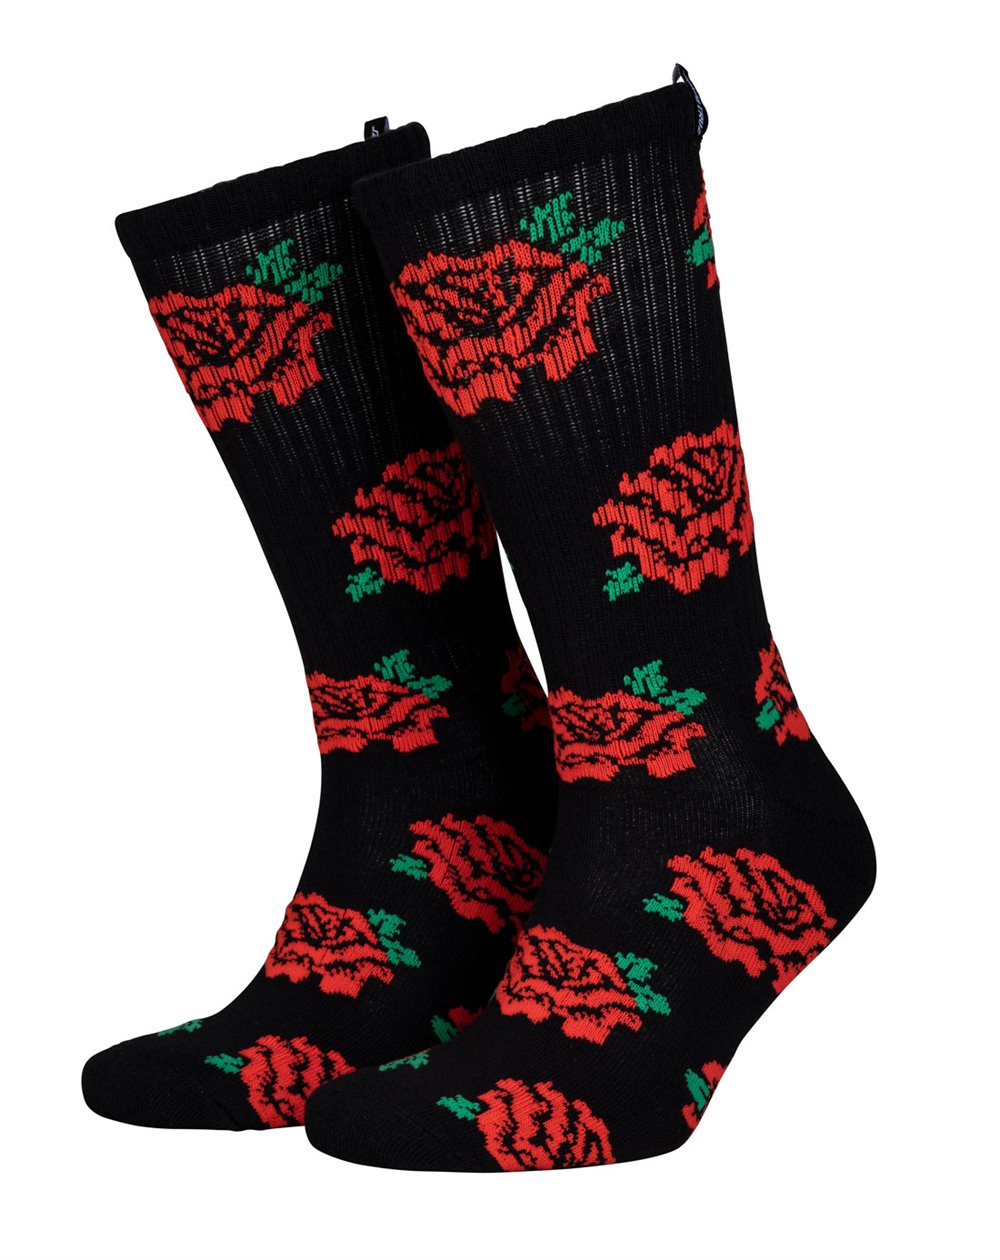 Santa Cruz Men's Skate Socks Dressen Roses (Black)